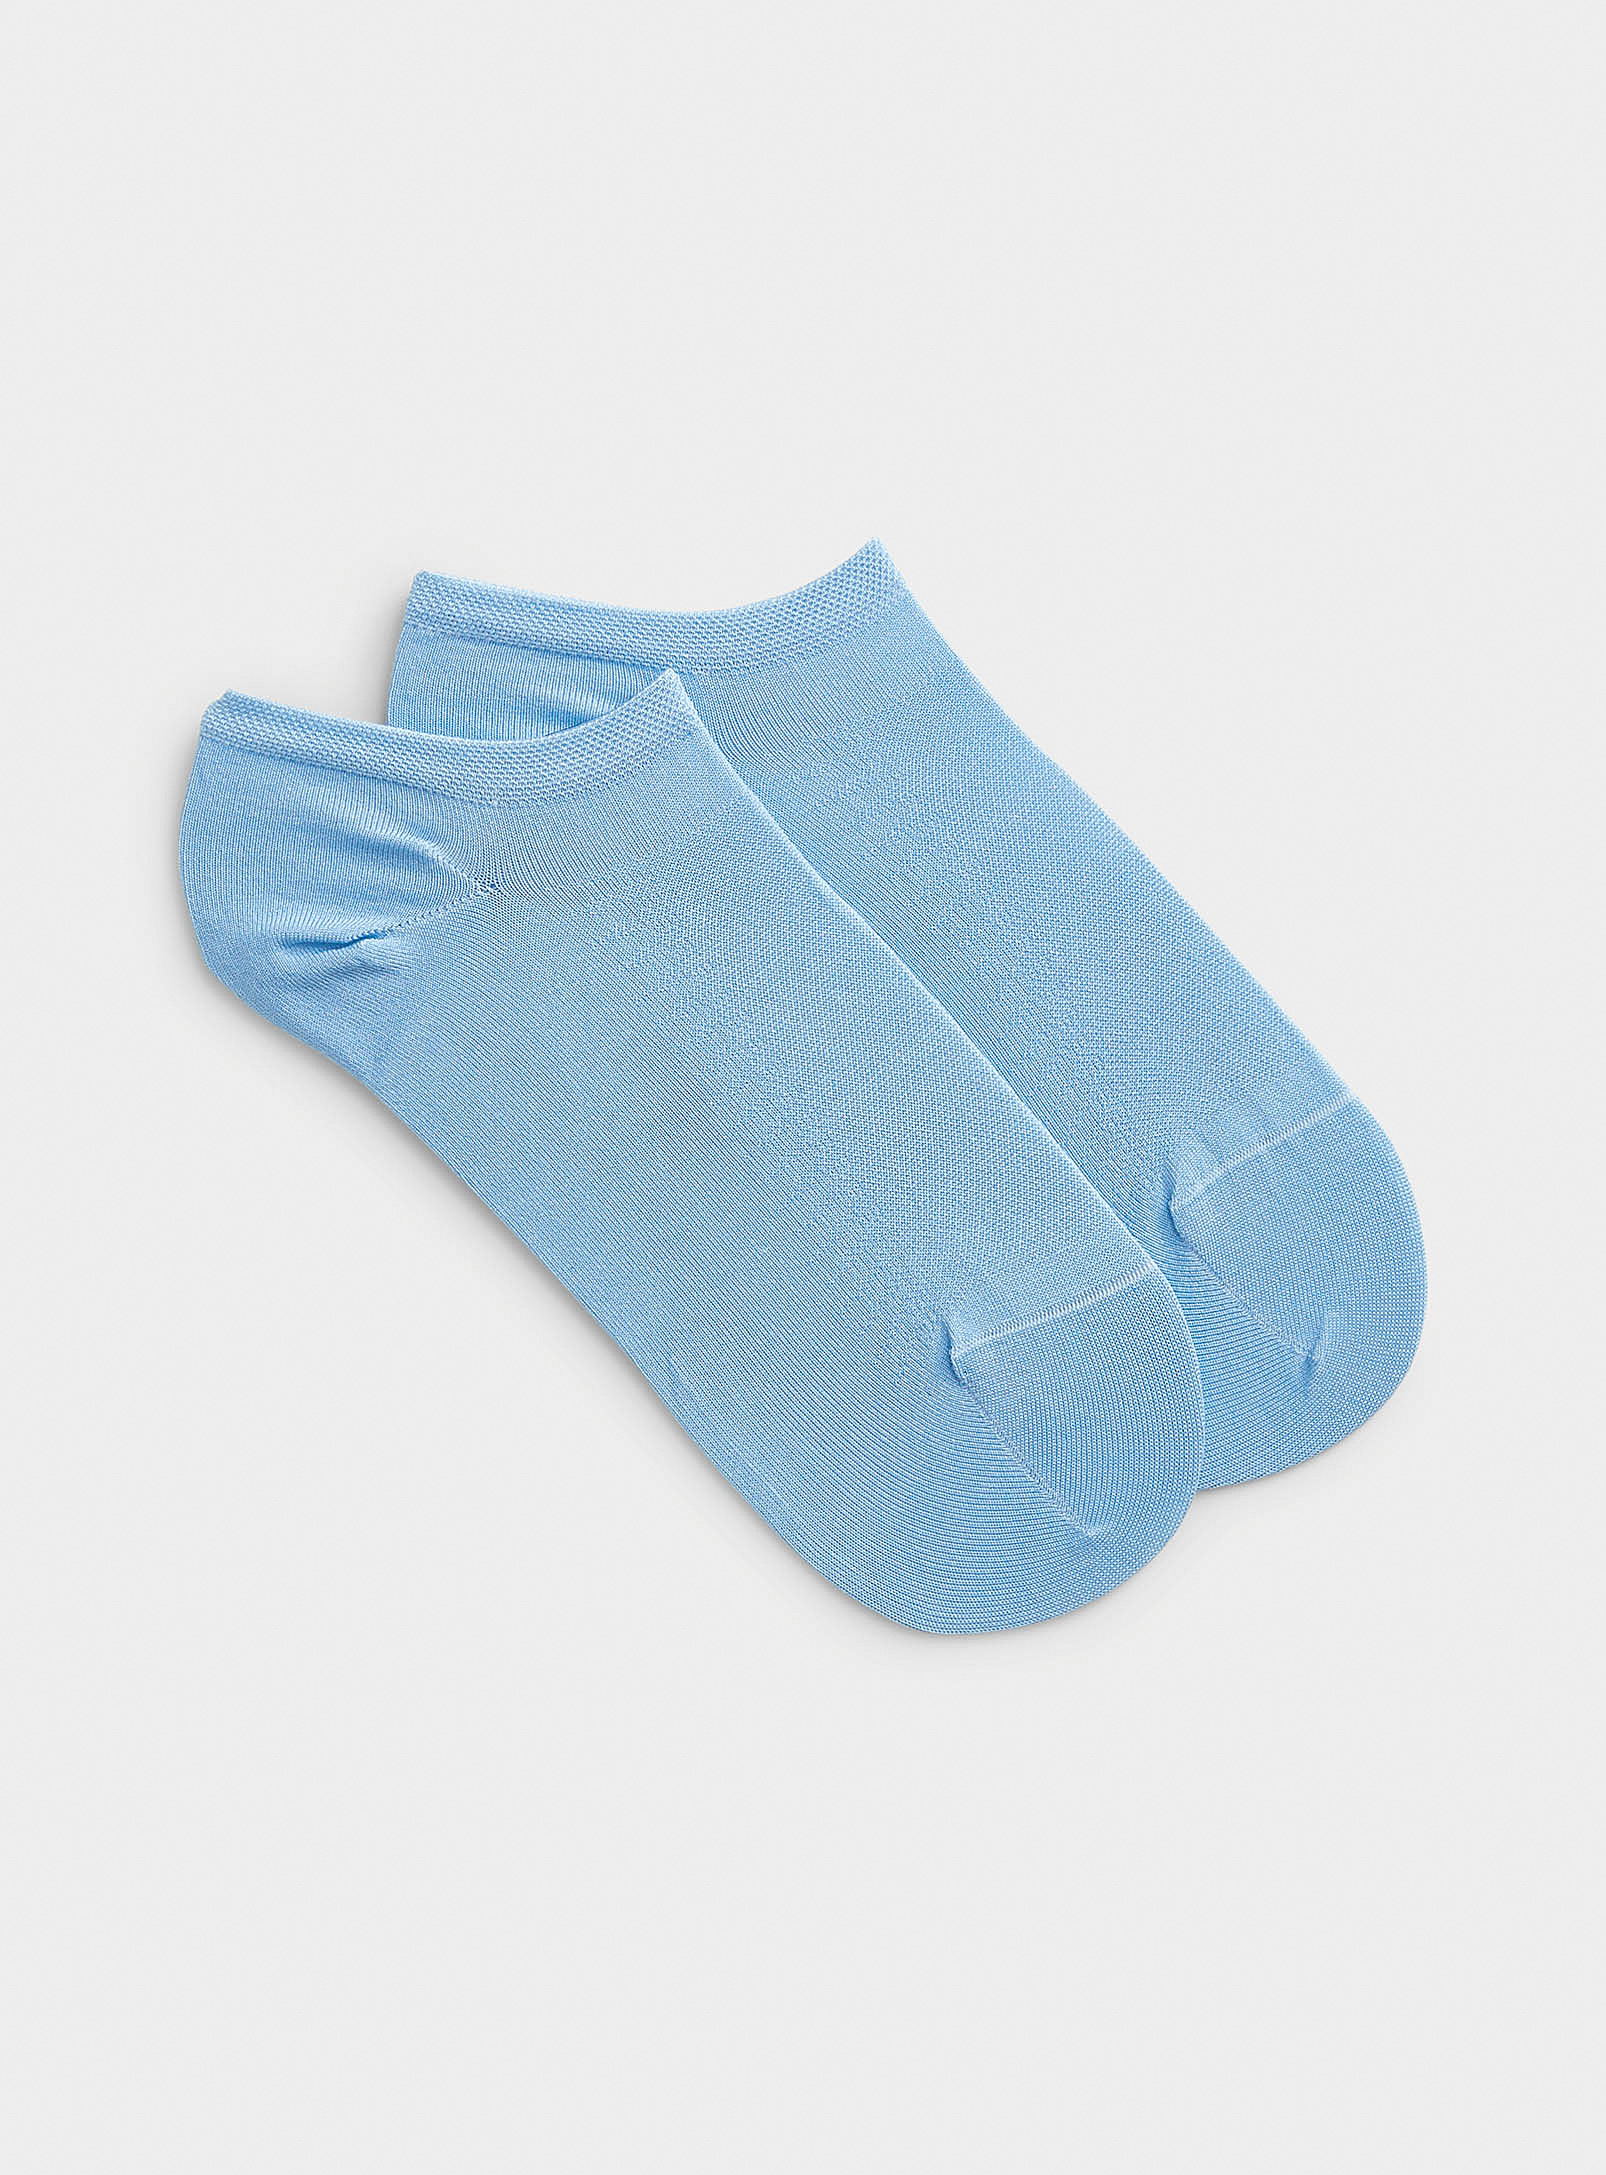 Solid silk dress sock